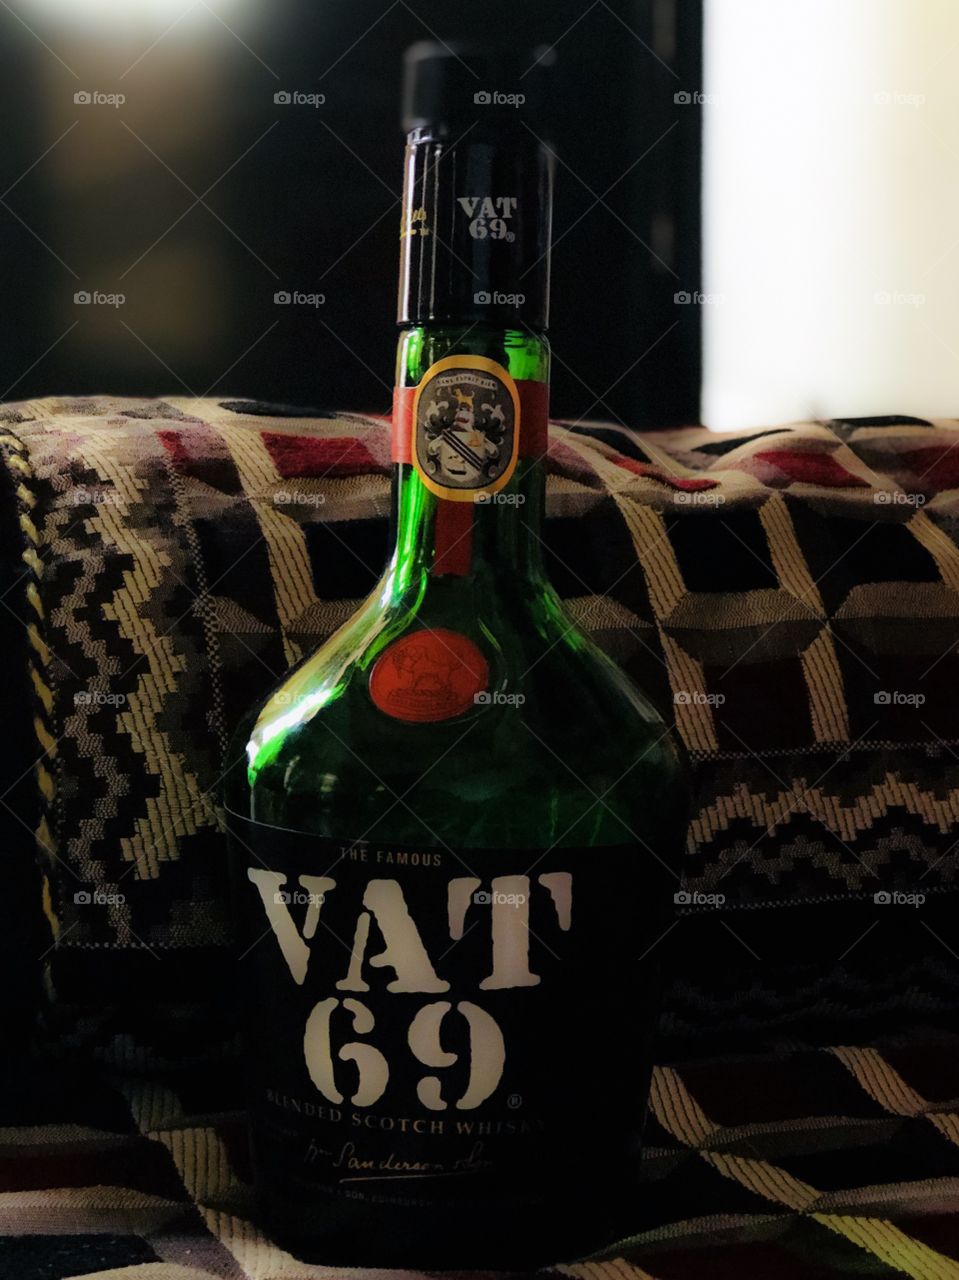 VAT 69 blended scotch whisk.